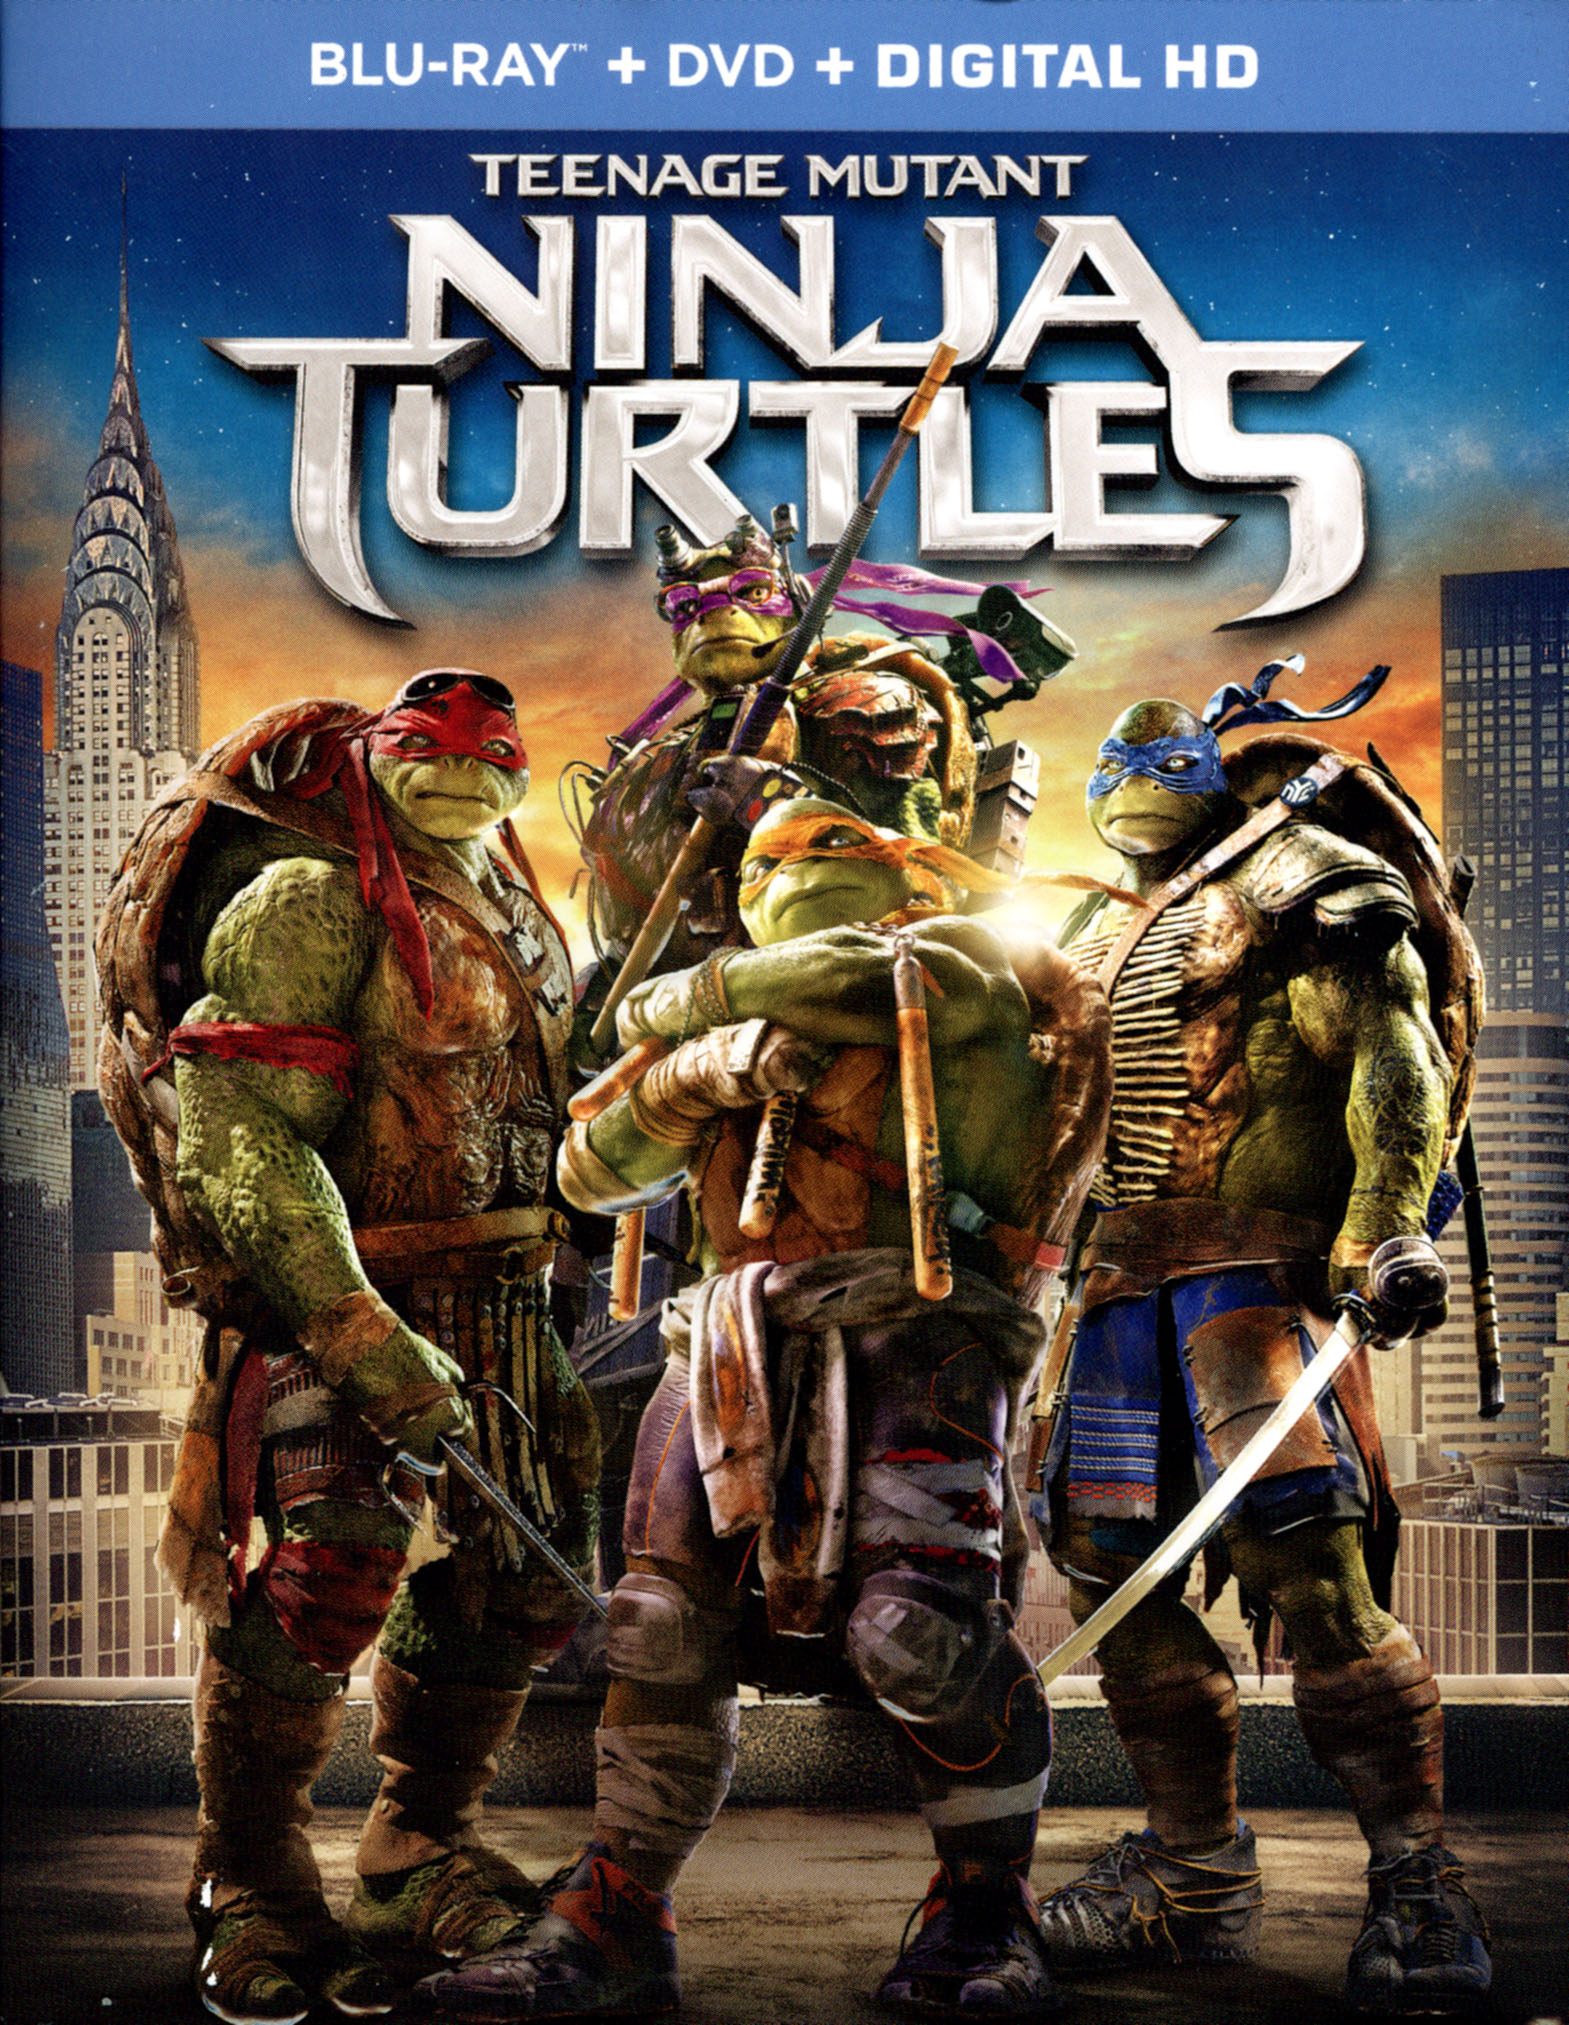 Teenage Mutant Ninja Turtles 2 Discs Includes Digital Copy Blu Ray Dvd 2014 Best Buy